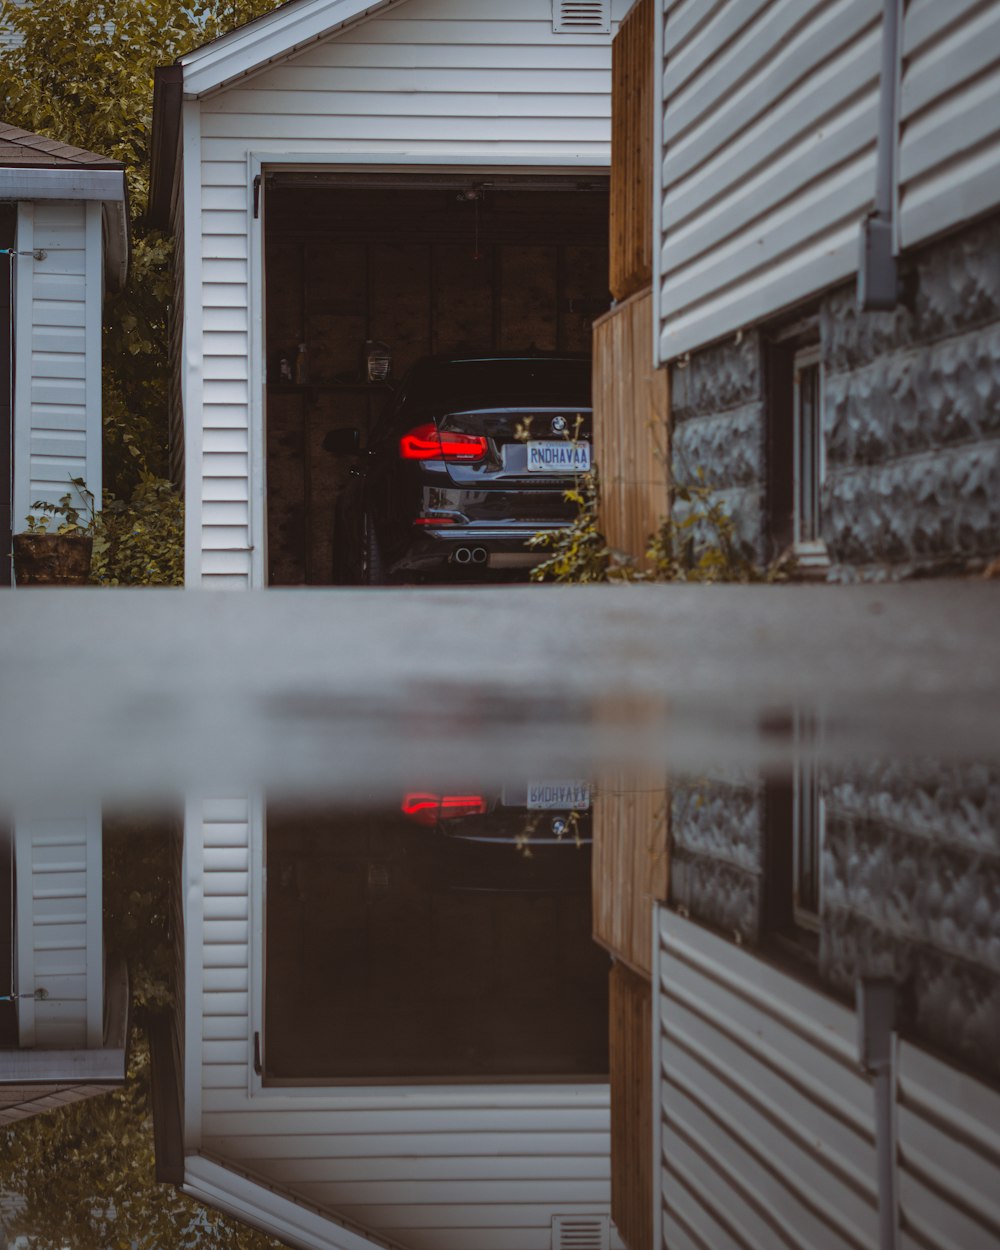 a car parked in a garage